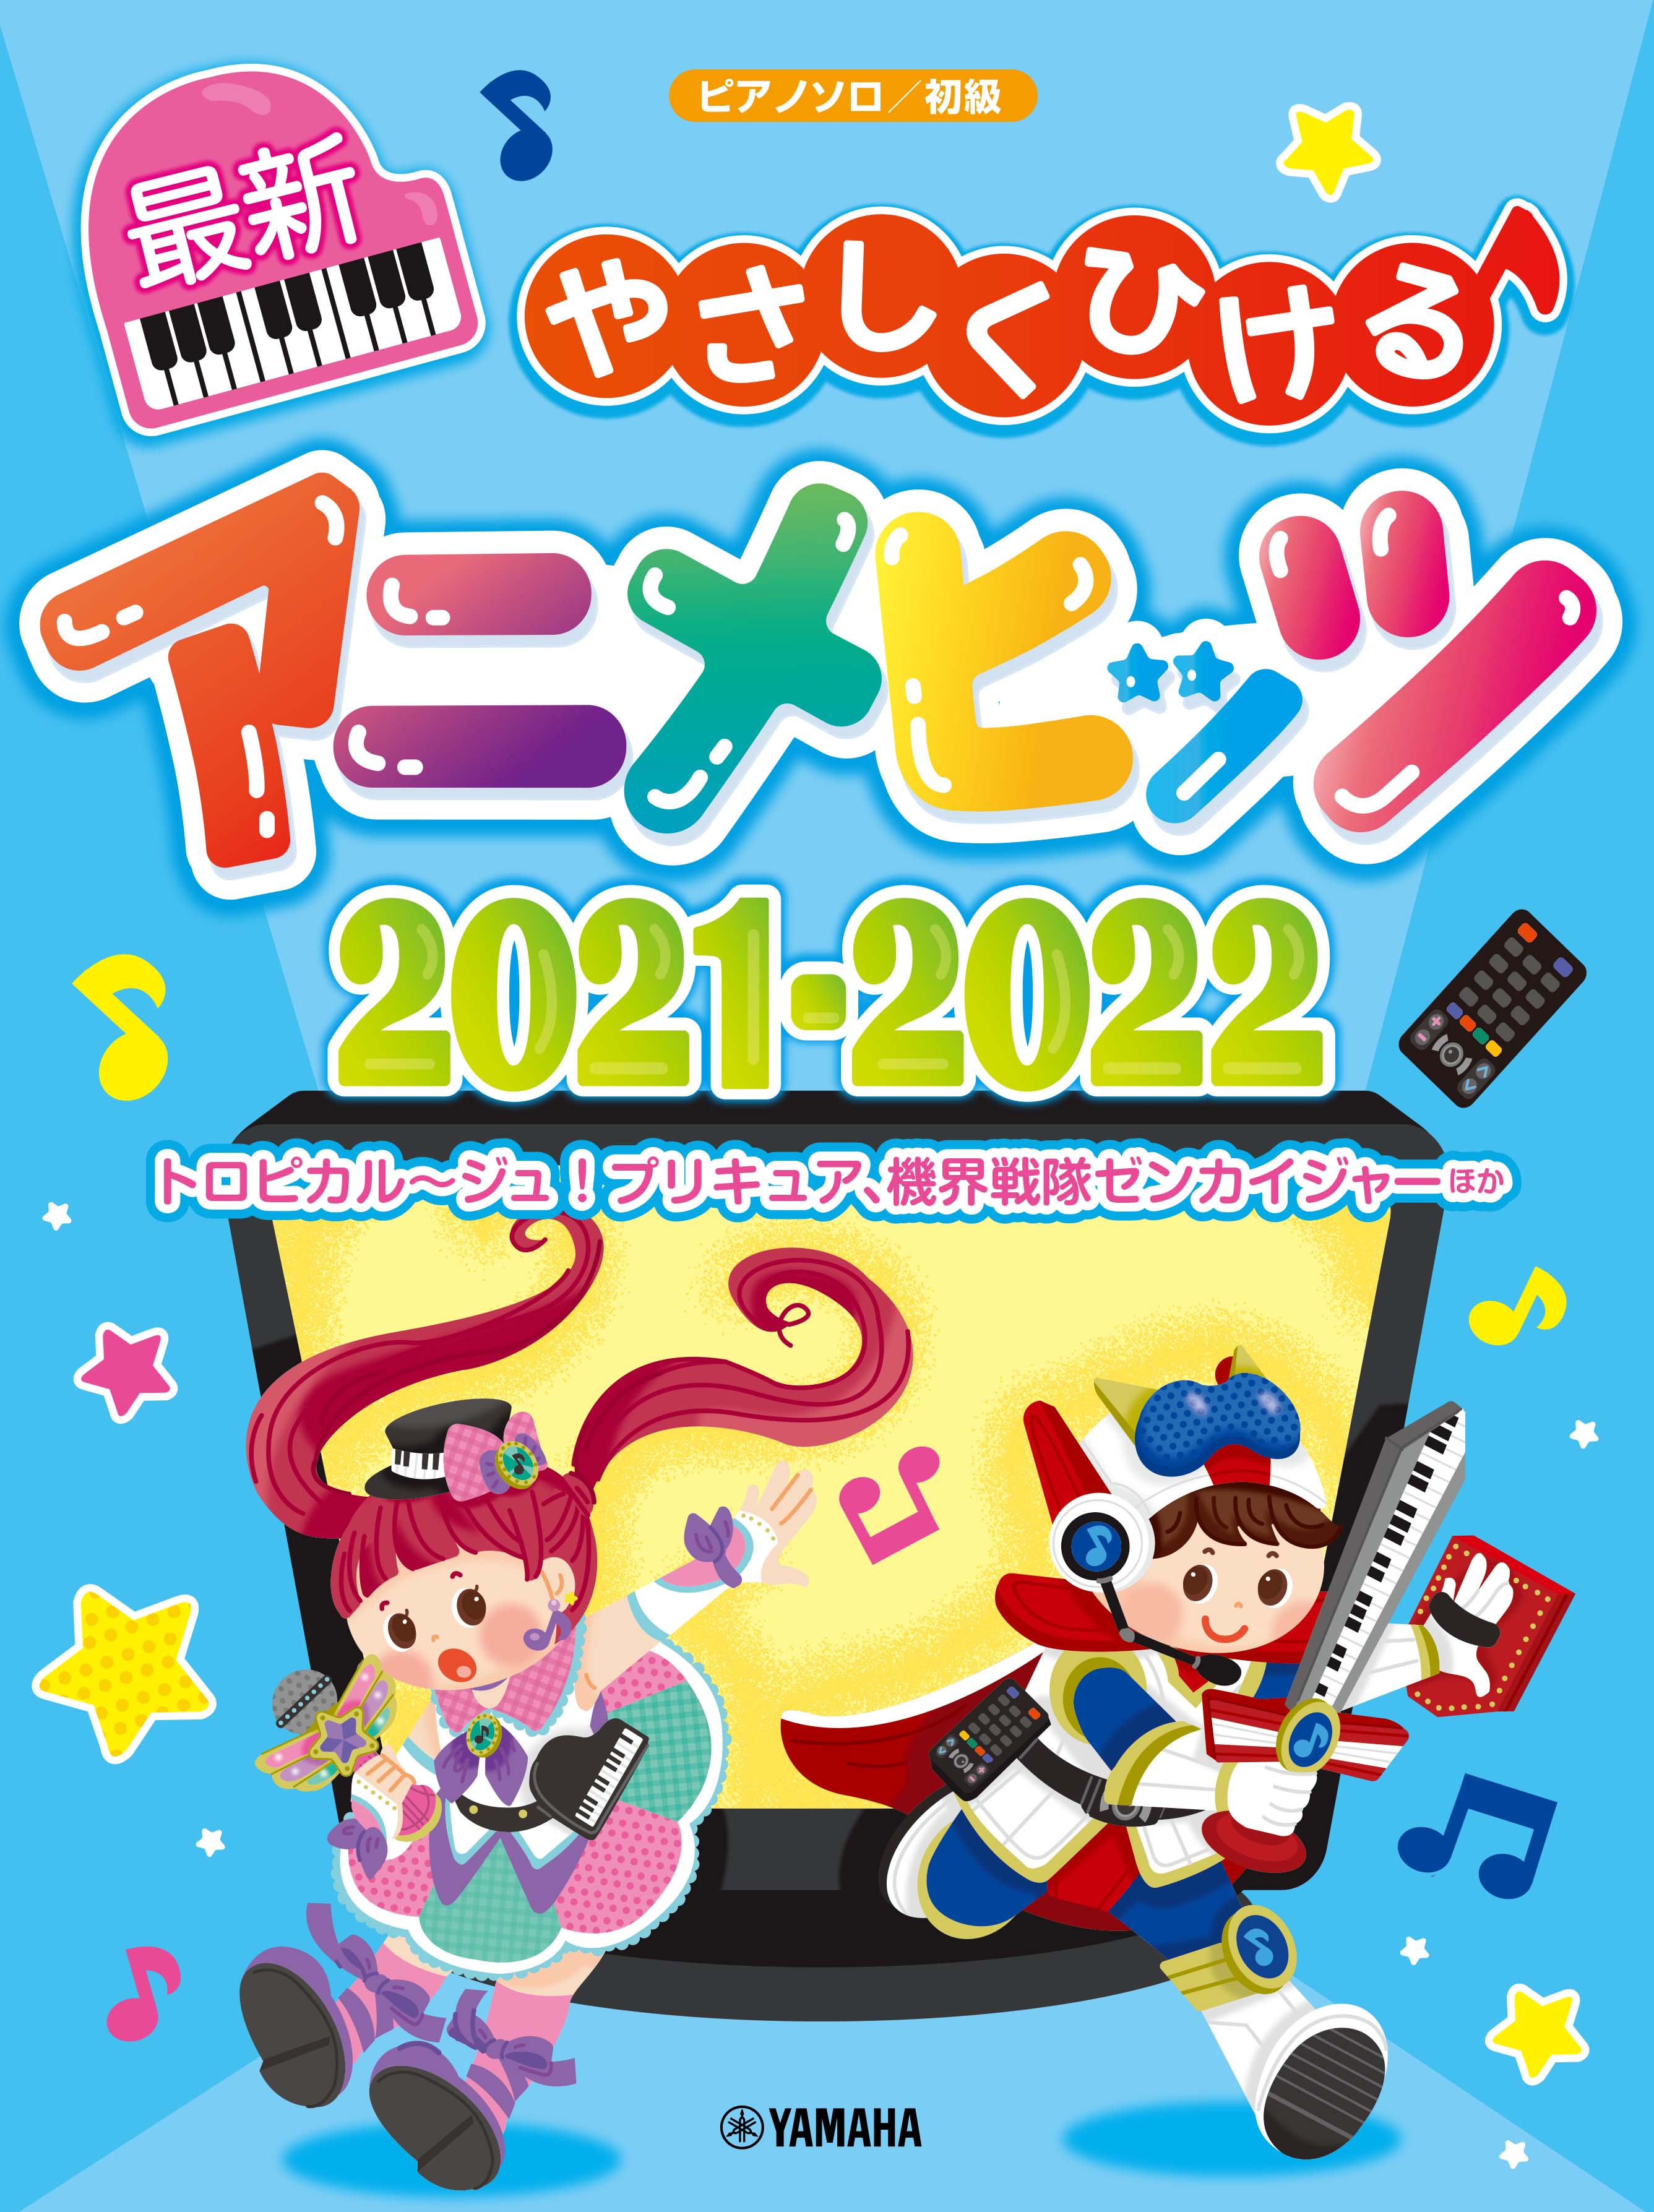 ピアノソロ やさしくひける最新アニメヒッツ21 22 6月25日発売 Newscast